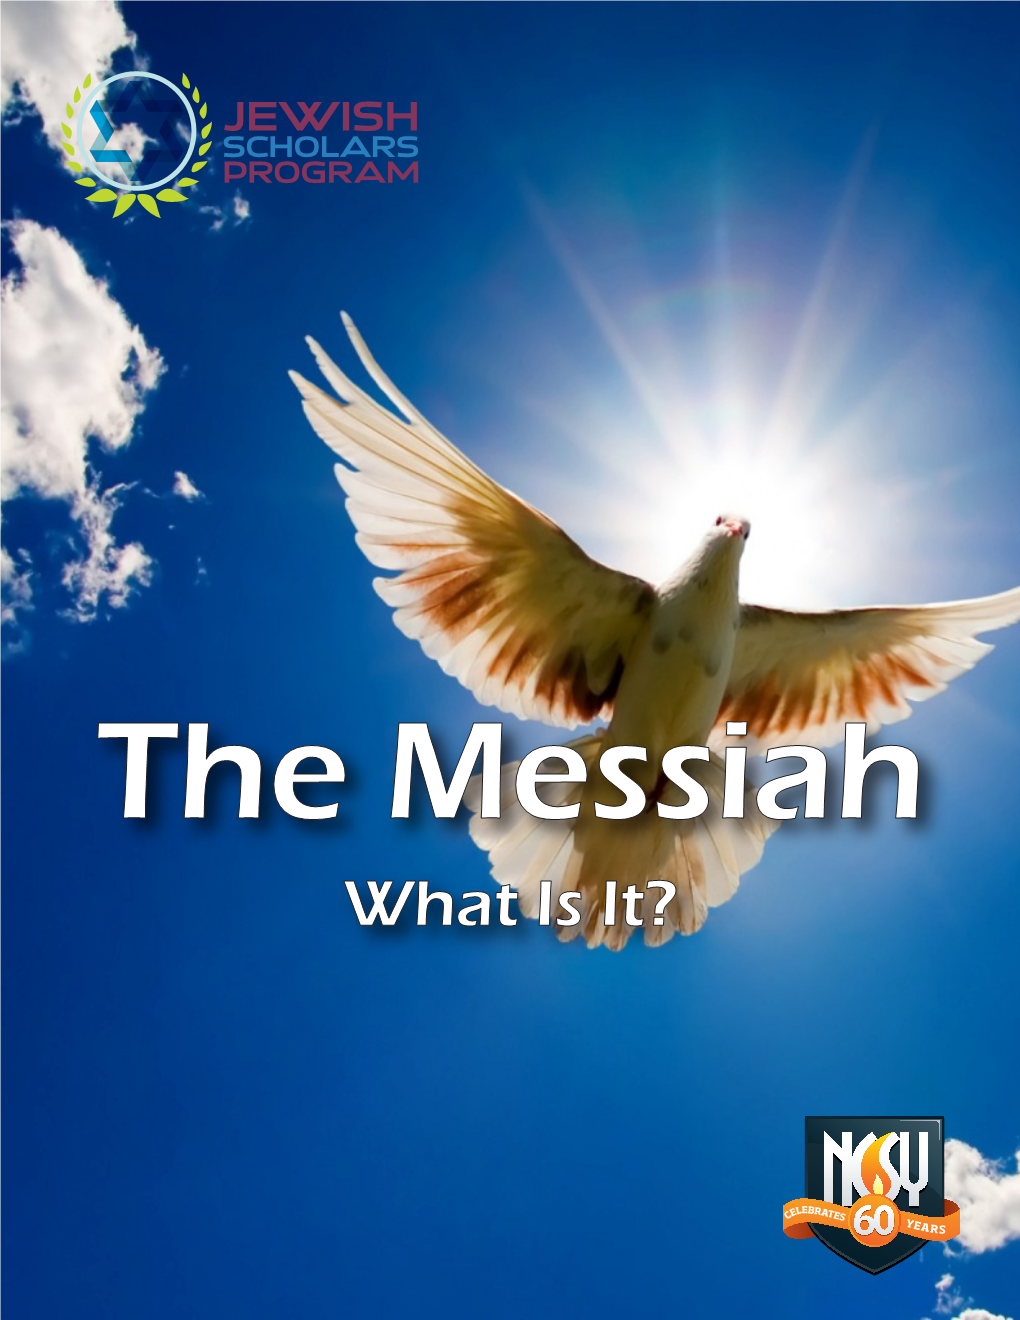 The Messiah What Is It? the MESSIAH WHAT IS the MESSIAH?